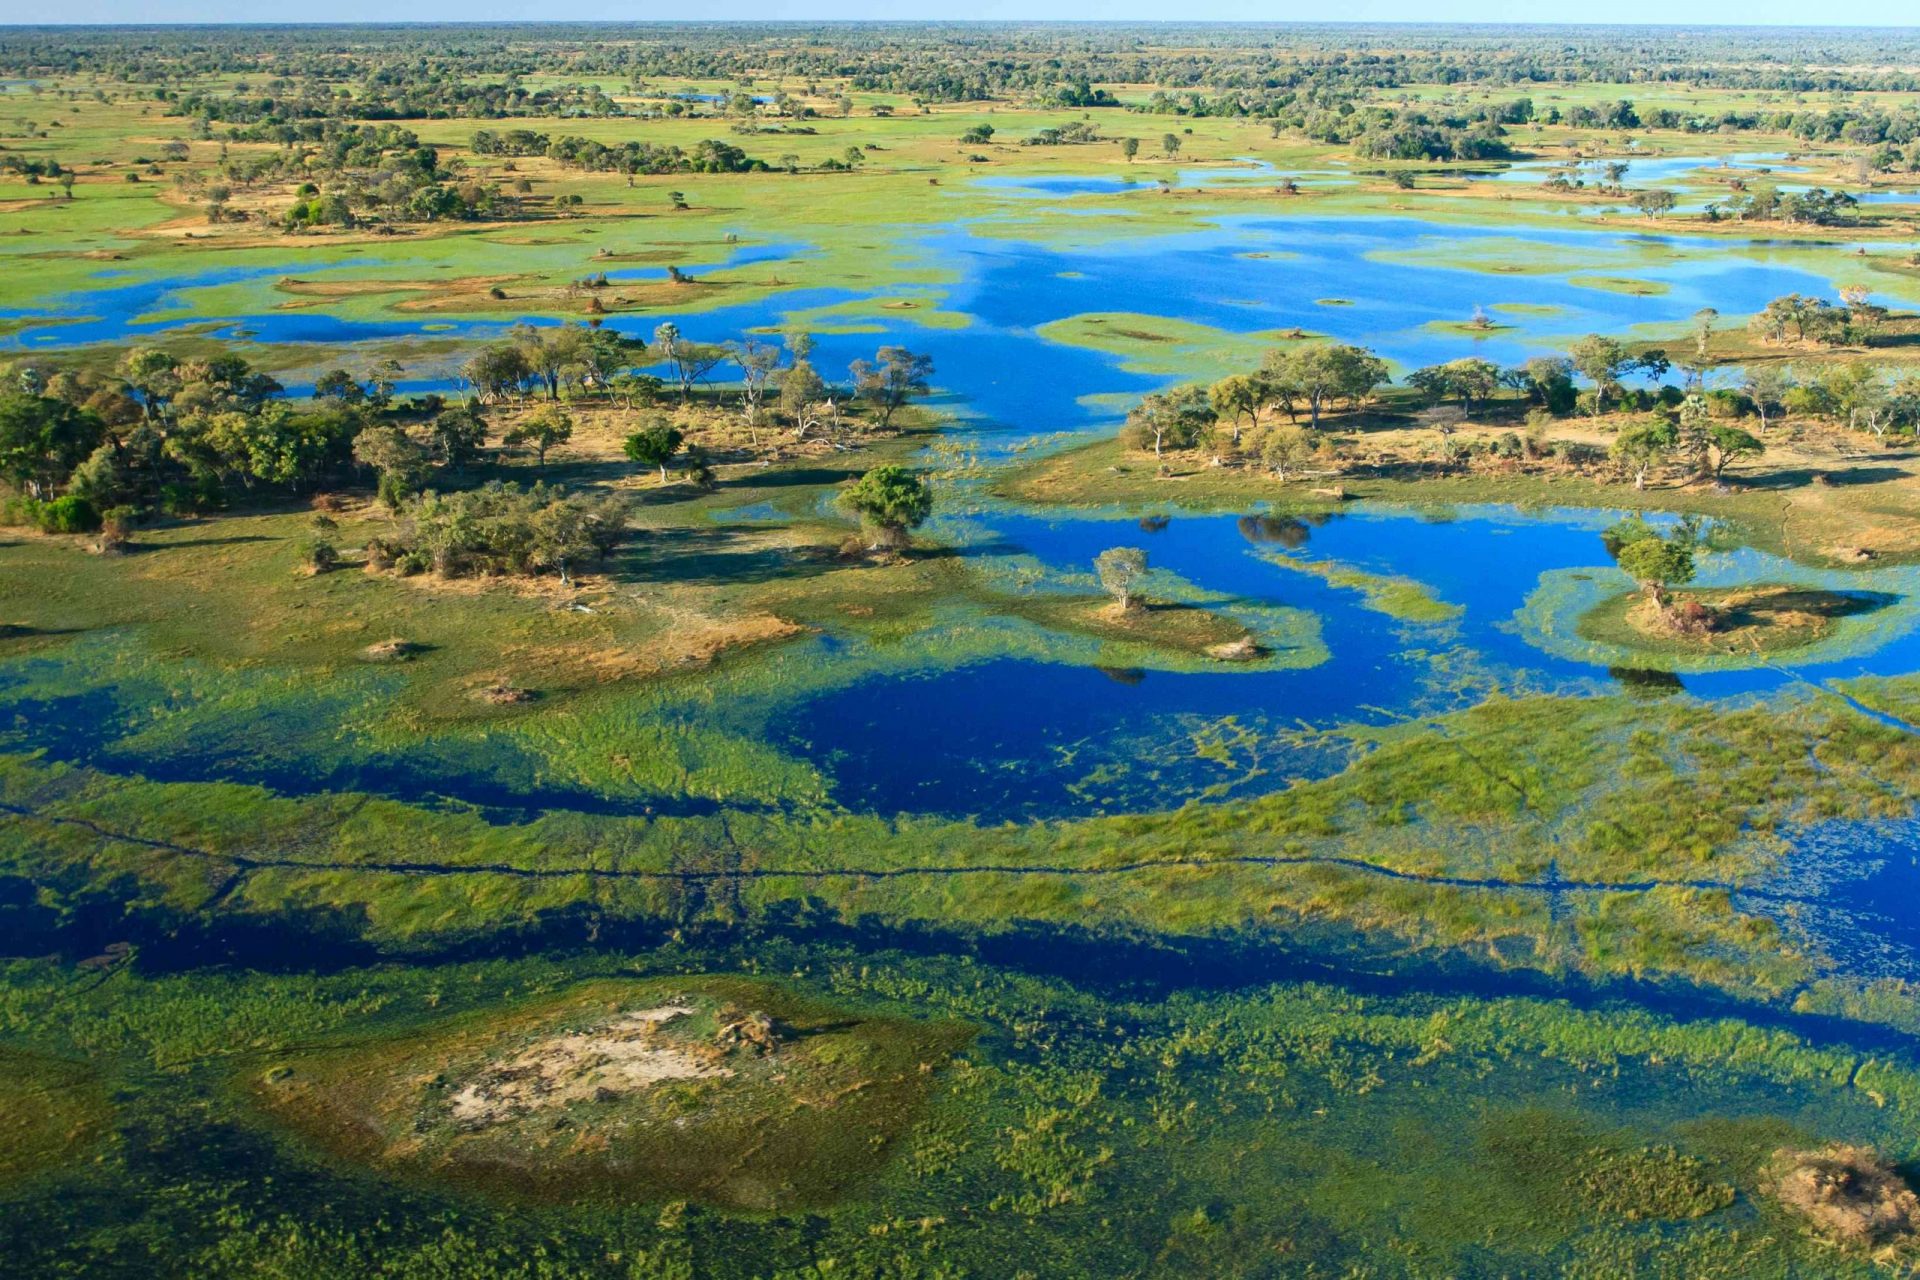 Vista aérea del Delta del Okavango, una integración de canales de color azul intenso, isla cubierta de árboles y pantanos